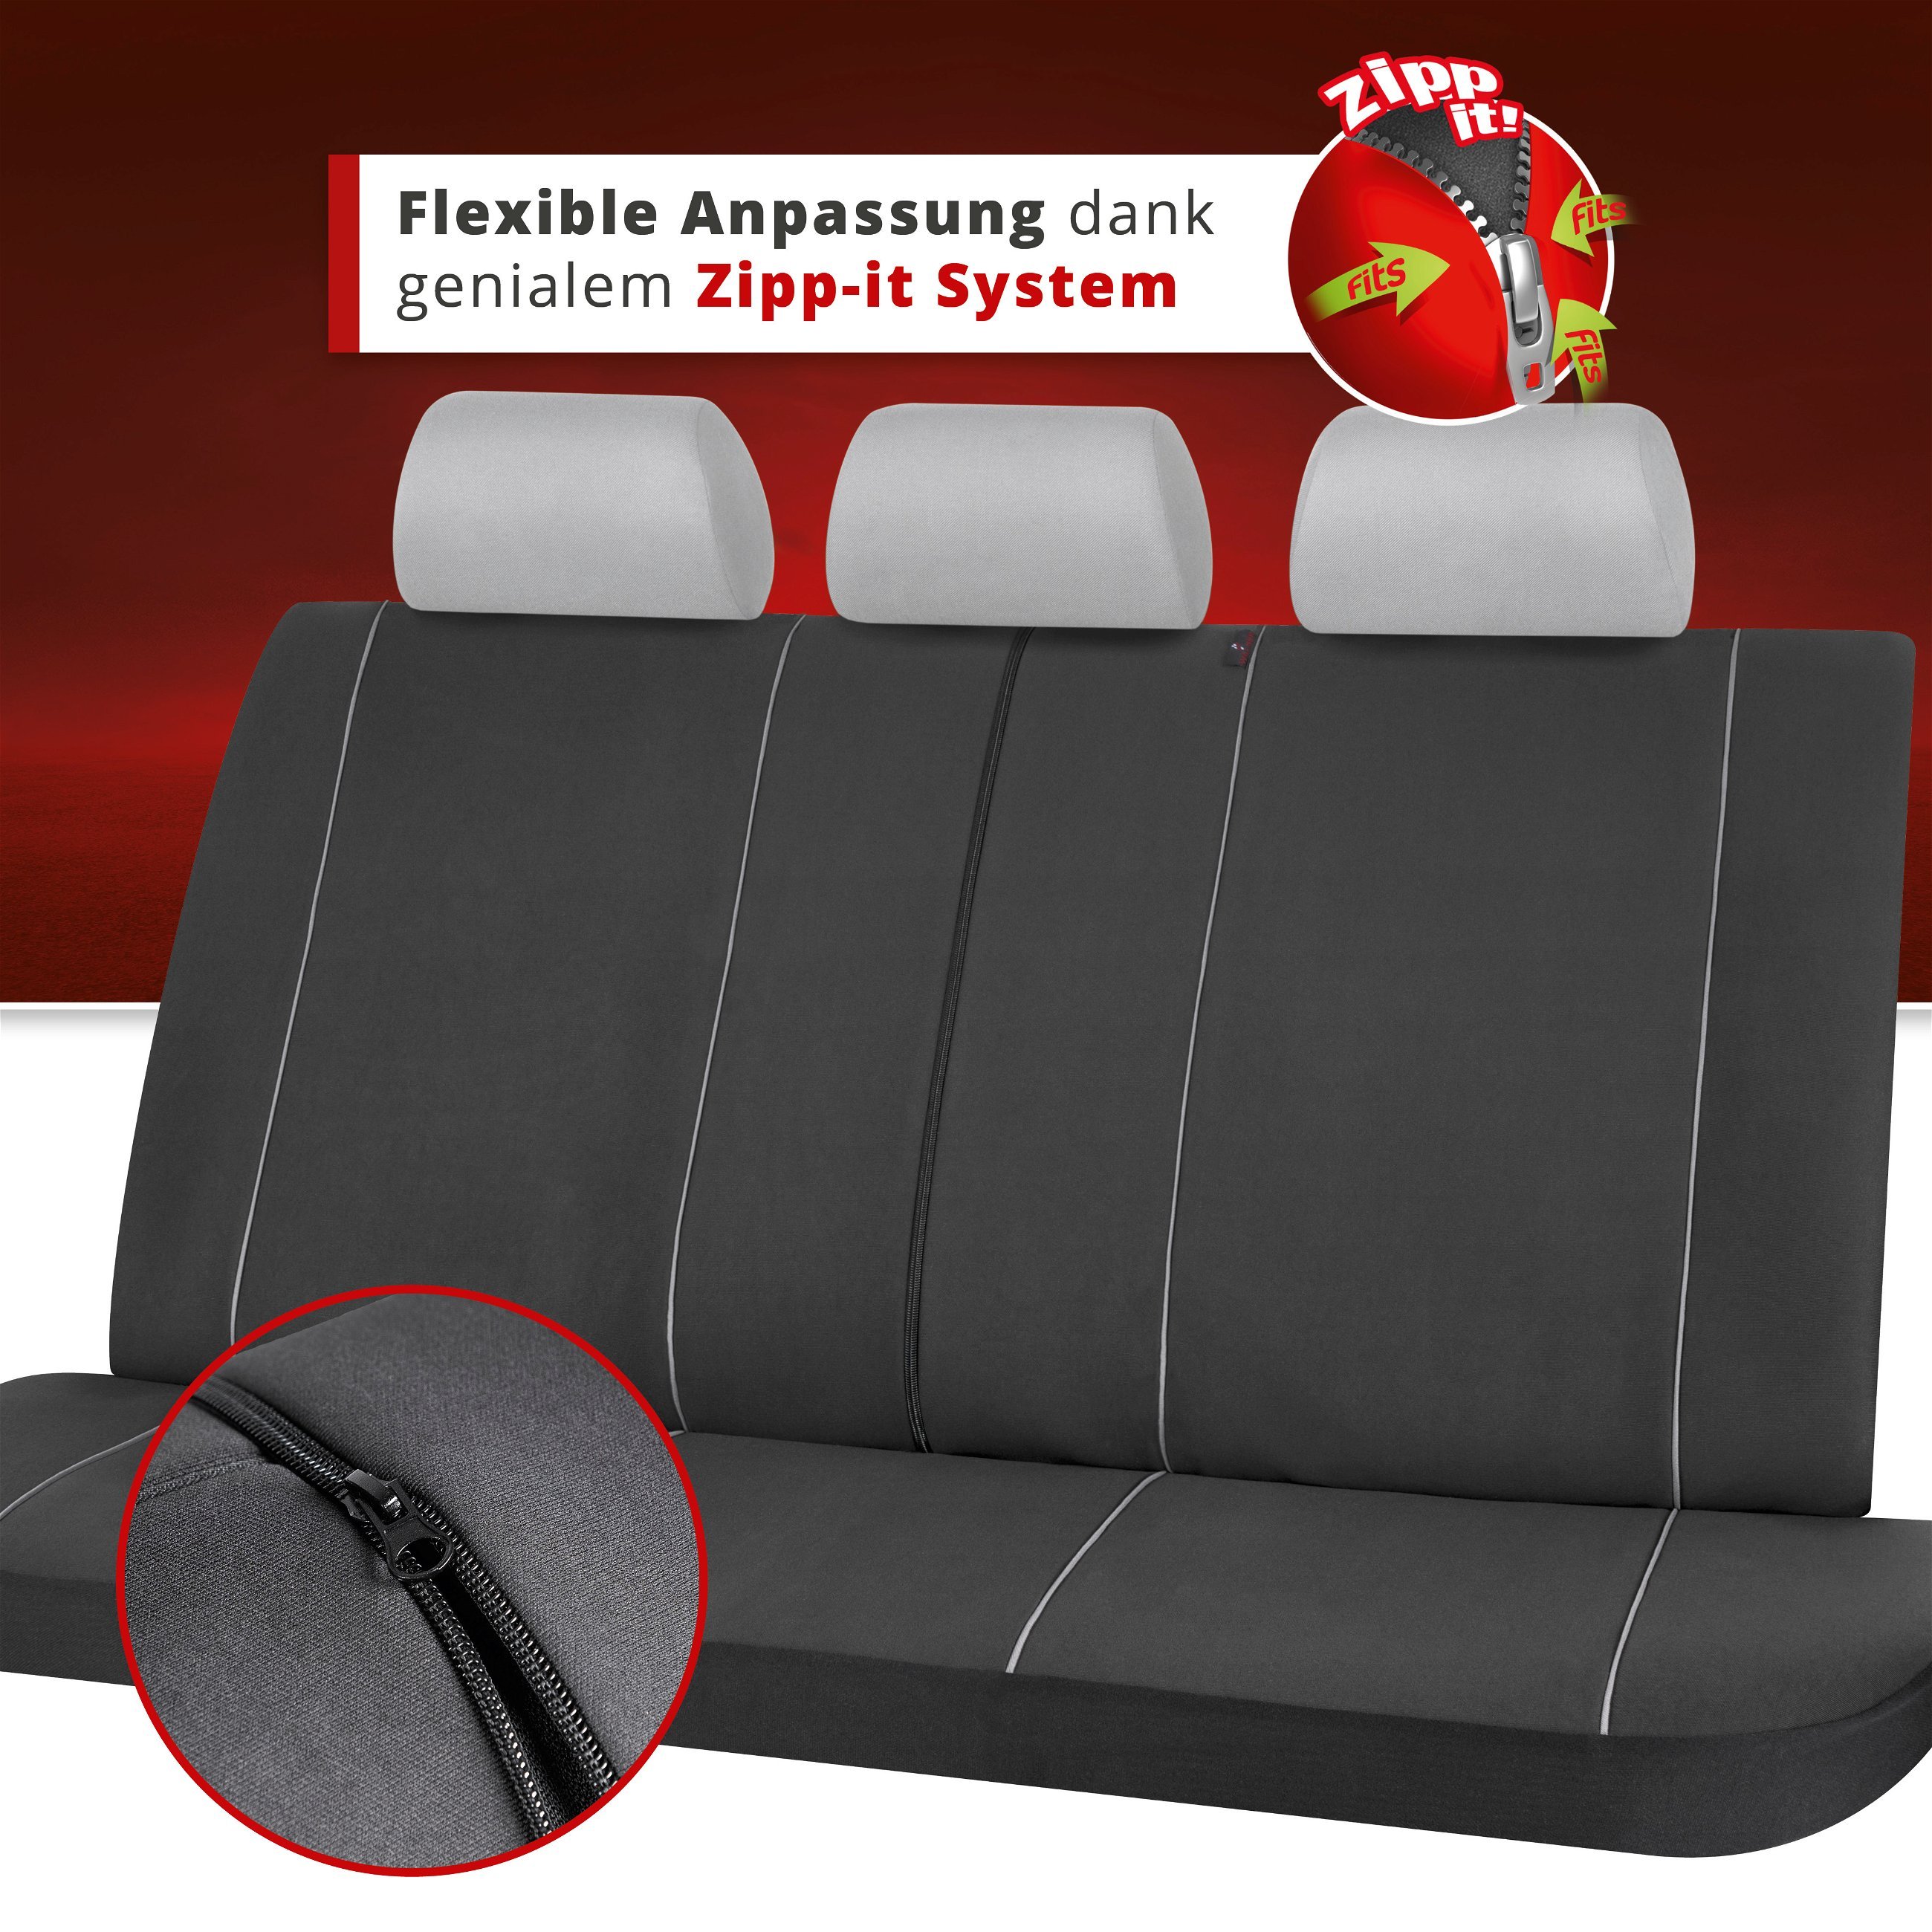 Autositzbezug Modulo, PKW-Schonbezug für Rückbank 3-teilig graphit